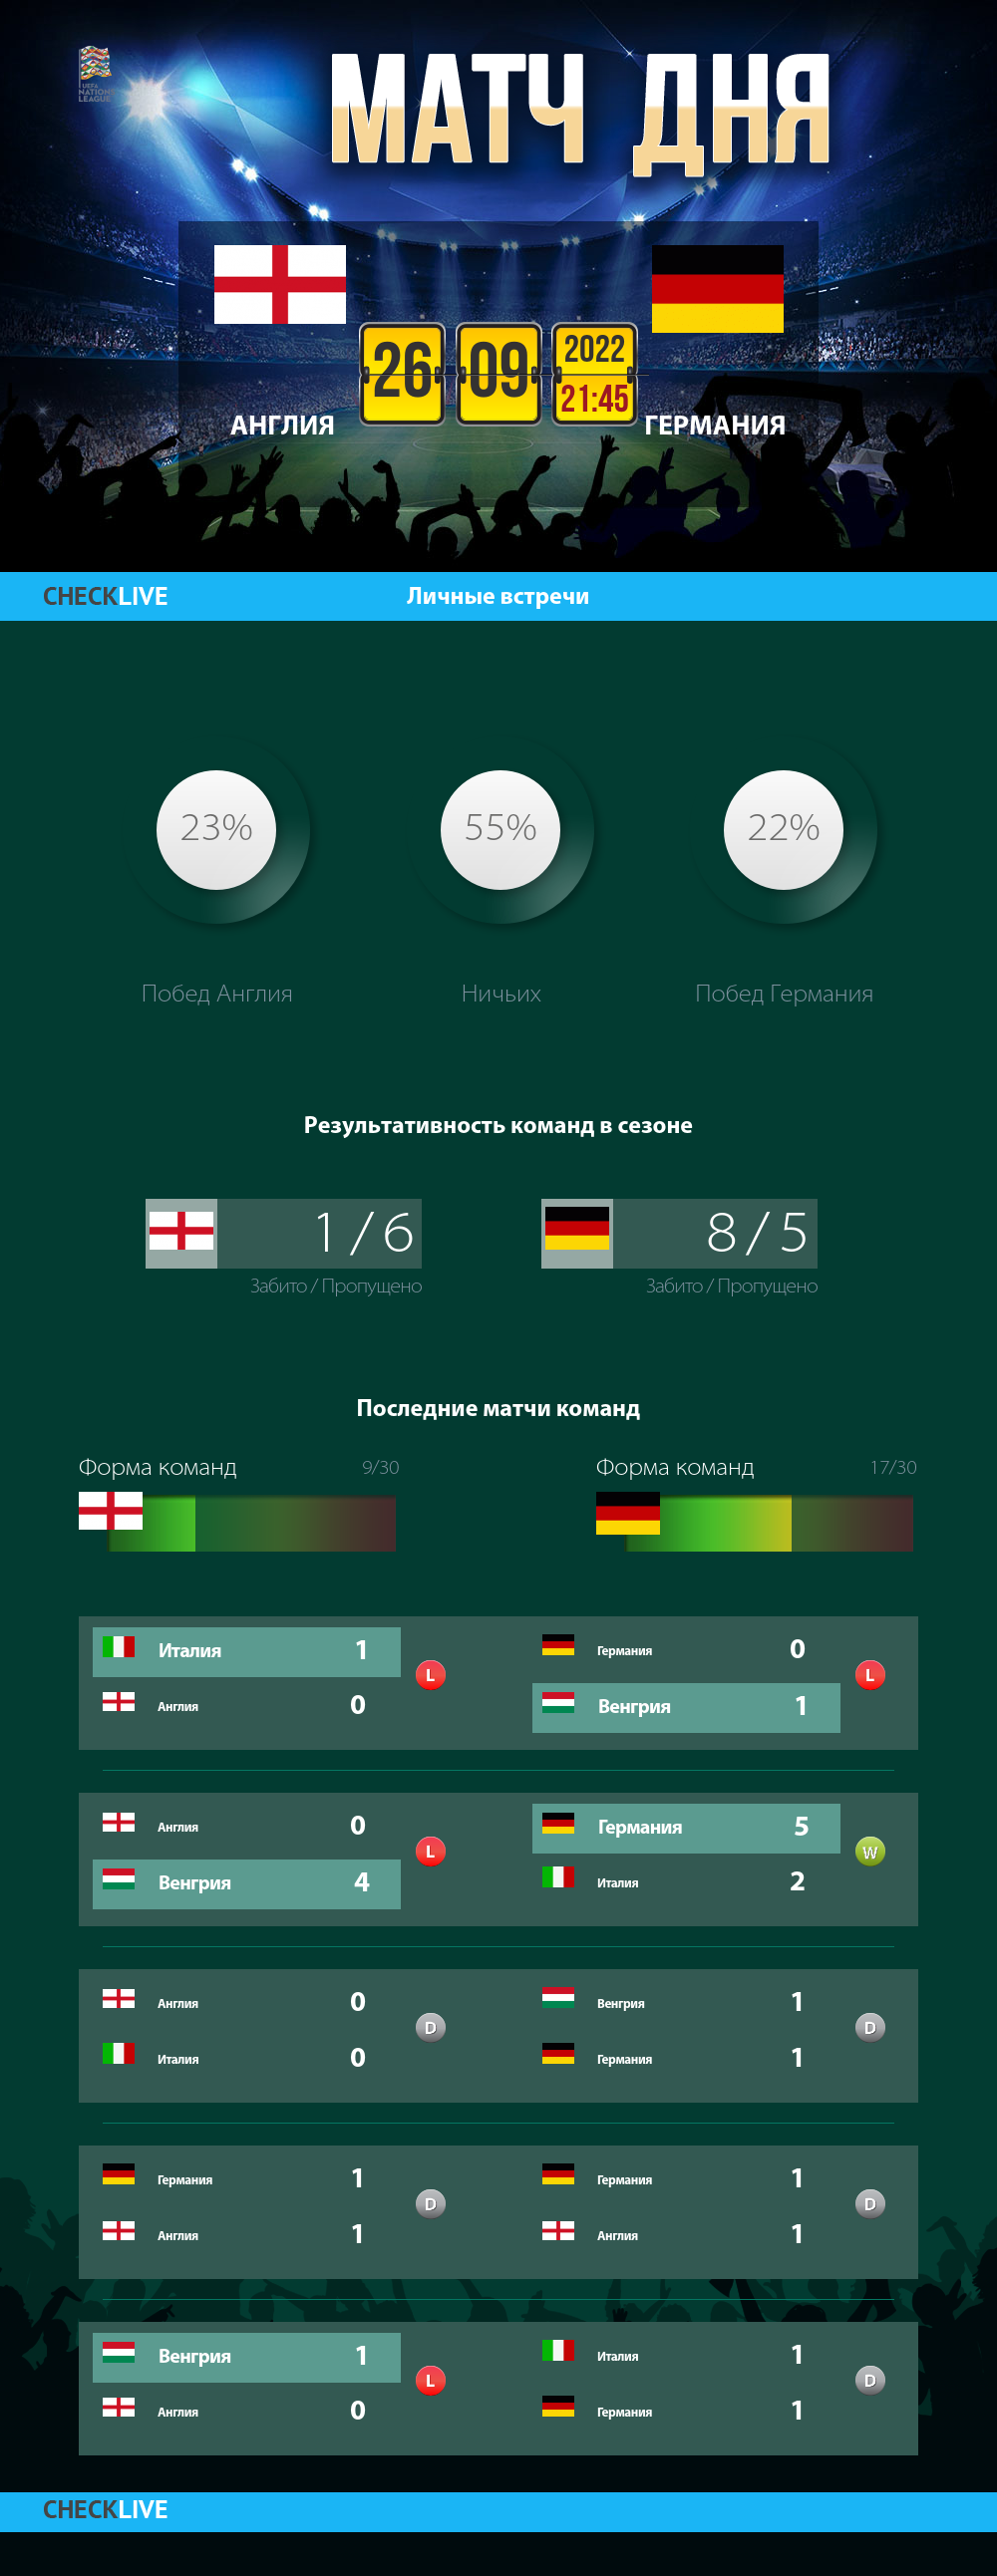 Инфографика Англия и Германия матч дня 26.09.2022